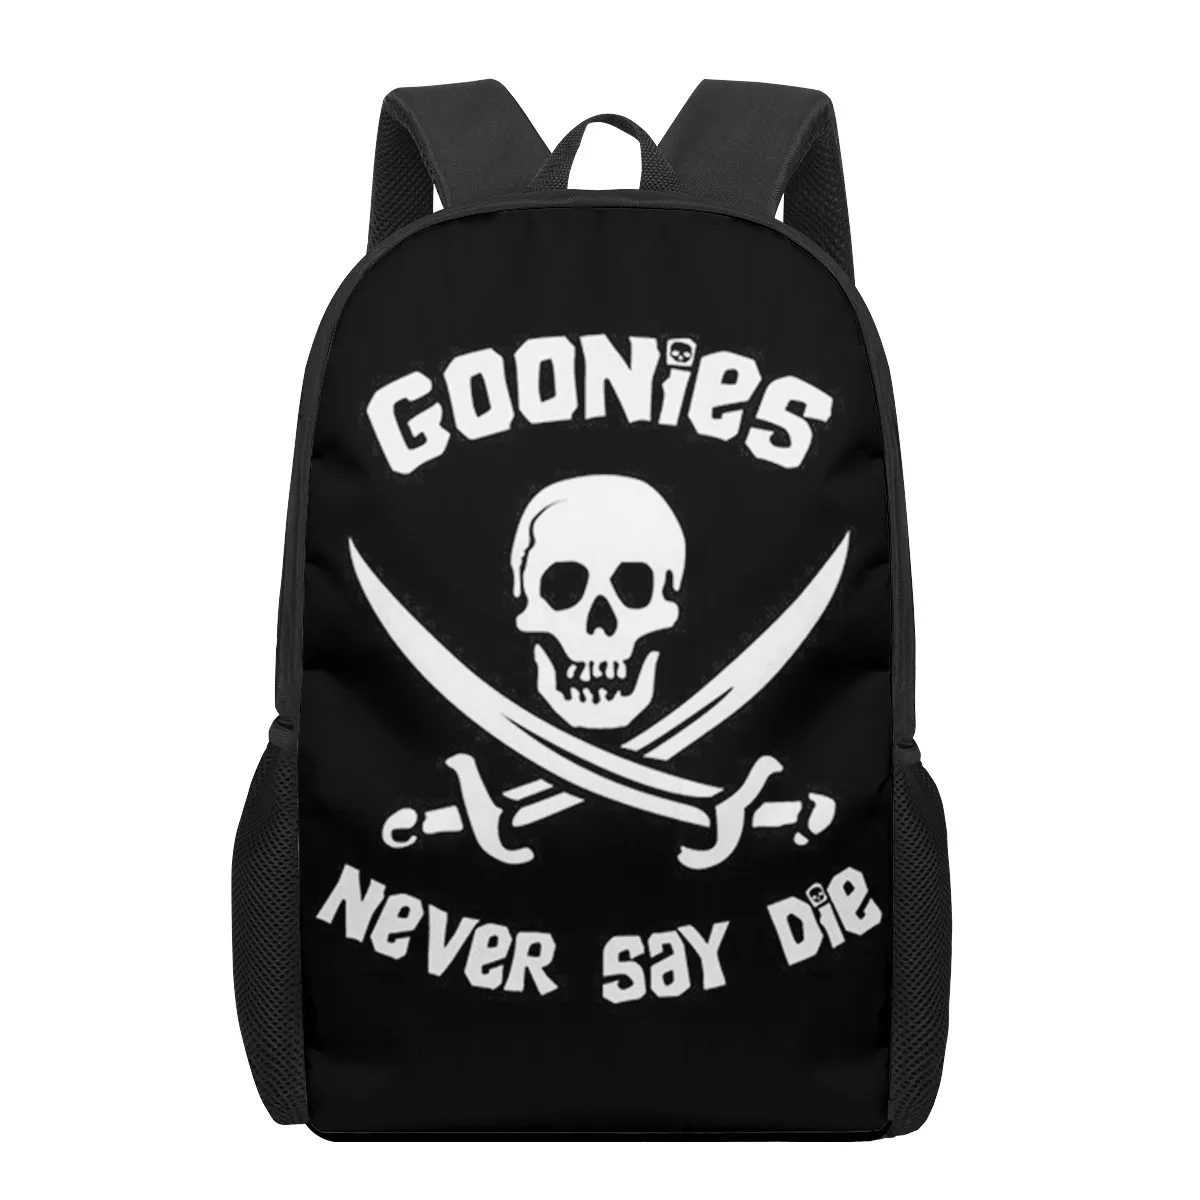 The Goonies 2021 School Bags Fashion Print Backpacks For Teenage Boys Girls Schoolbag Book Bag 16 Kids Backpack